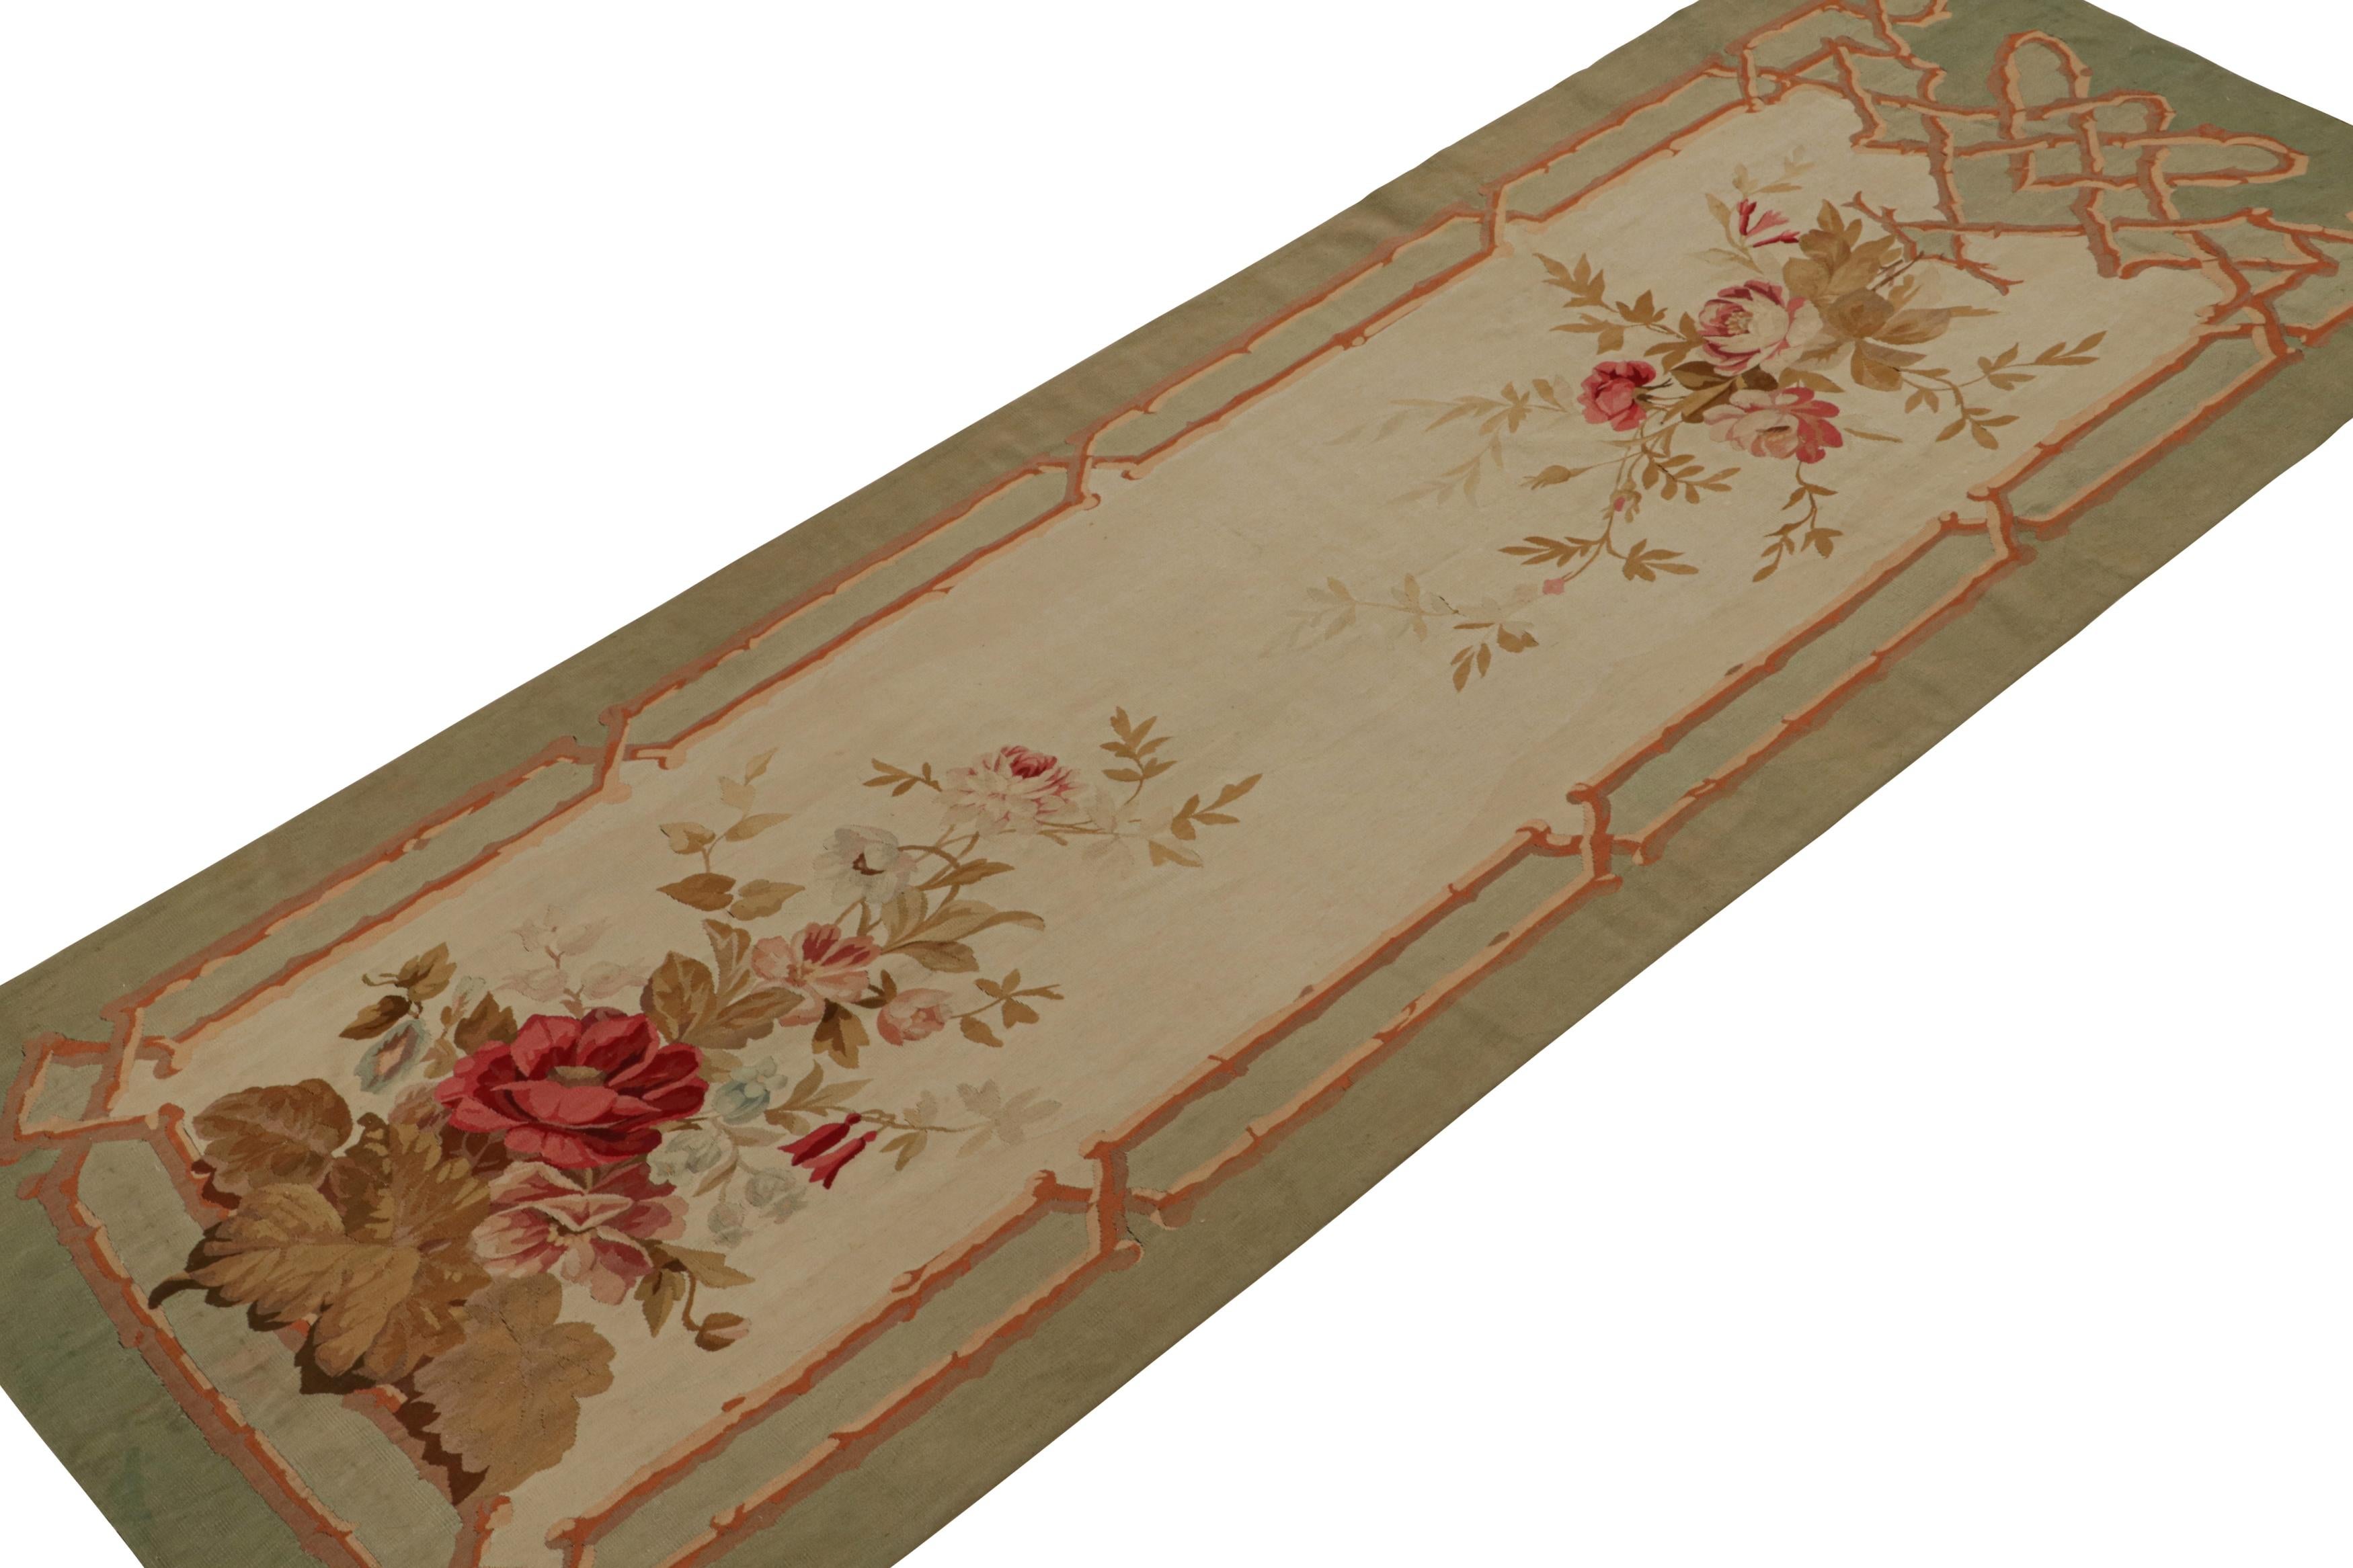 Ce tapis de tapisserie d'Aubusson 4x11 fait partie d'un ensemble rare de deux tapis plats jumelés provenant de la France du début du siècle. Tous deux tissés à la main en laine vers 1890-1900, ils présentent des bordures vertes et brunes autour d'un